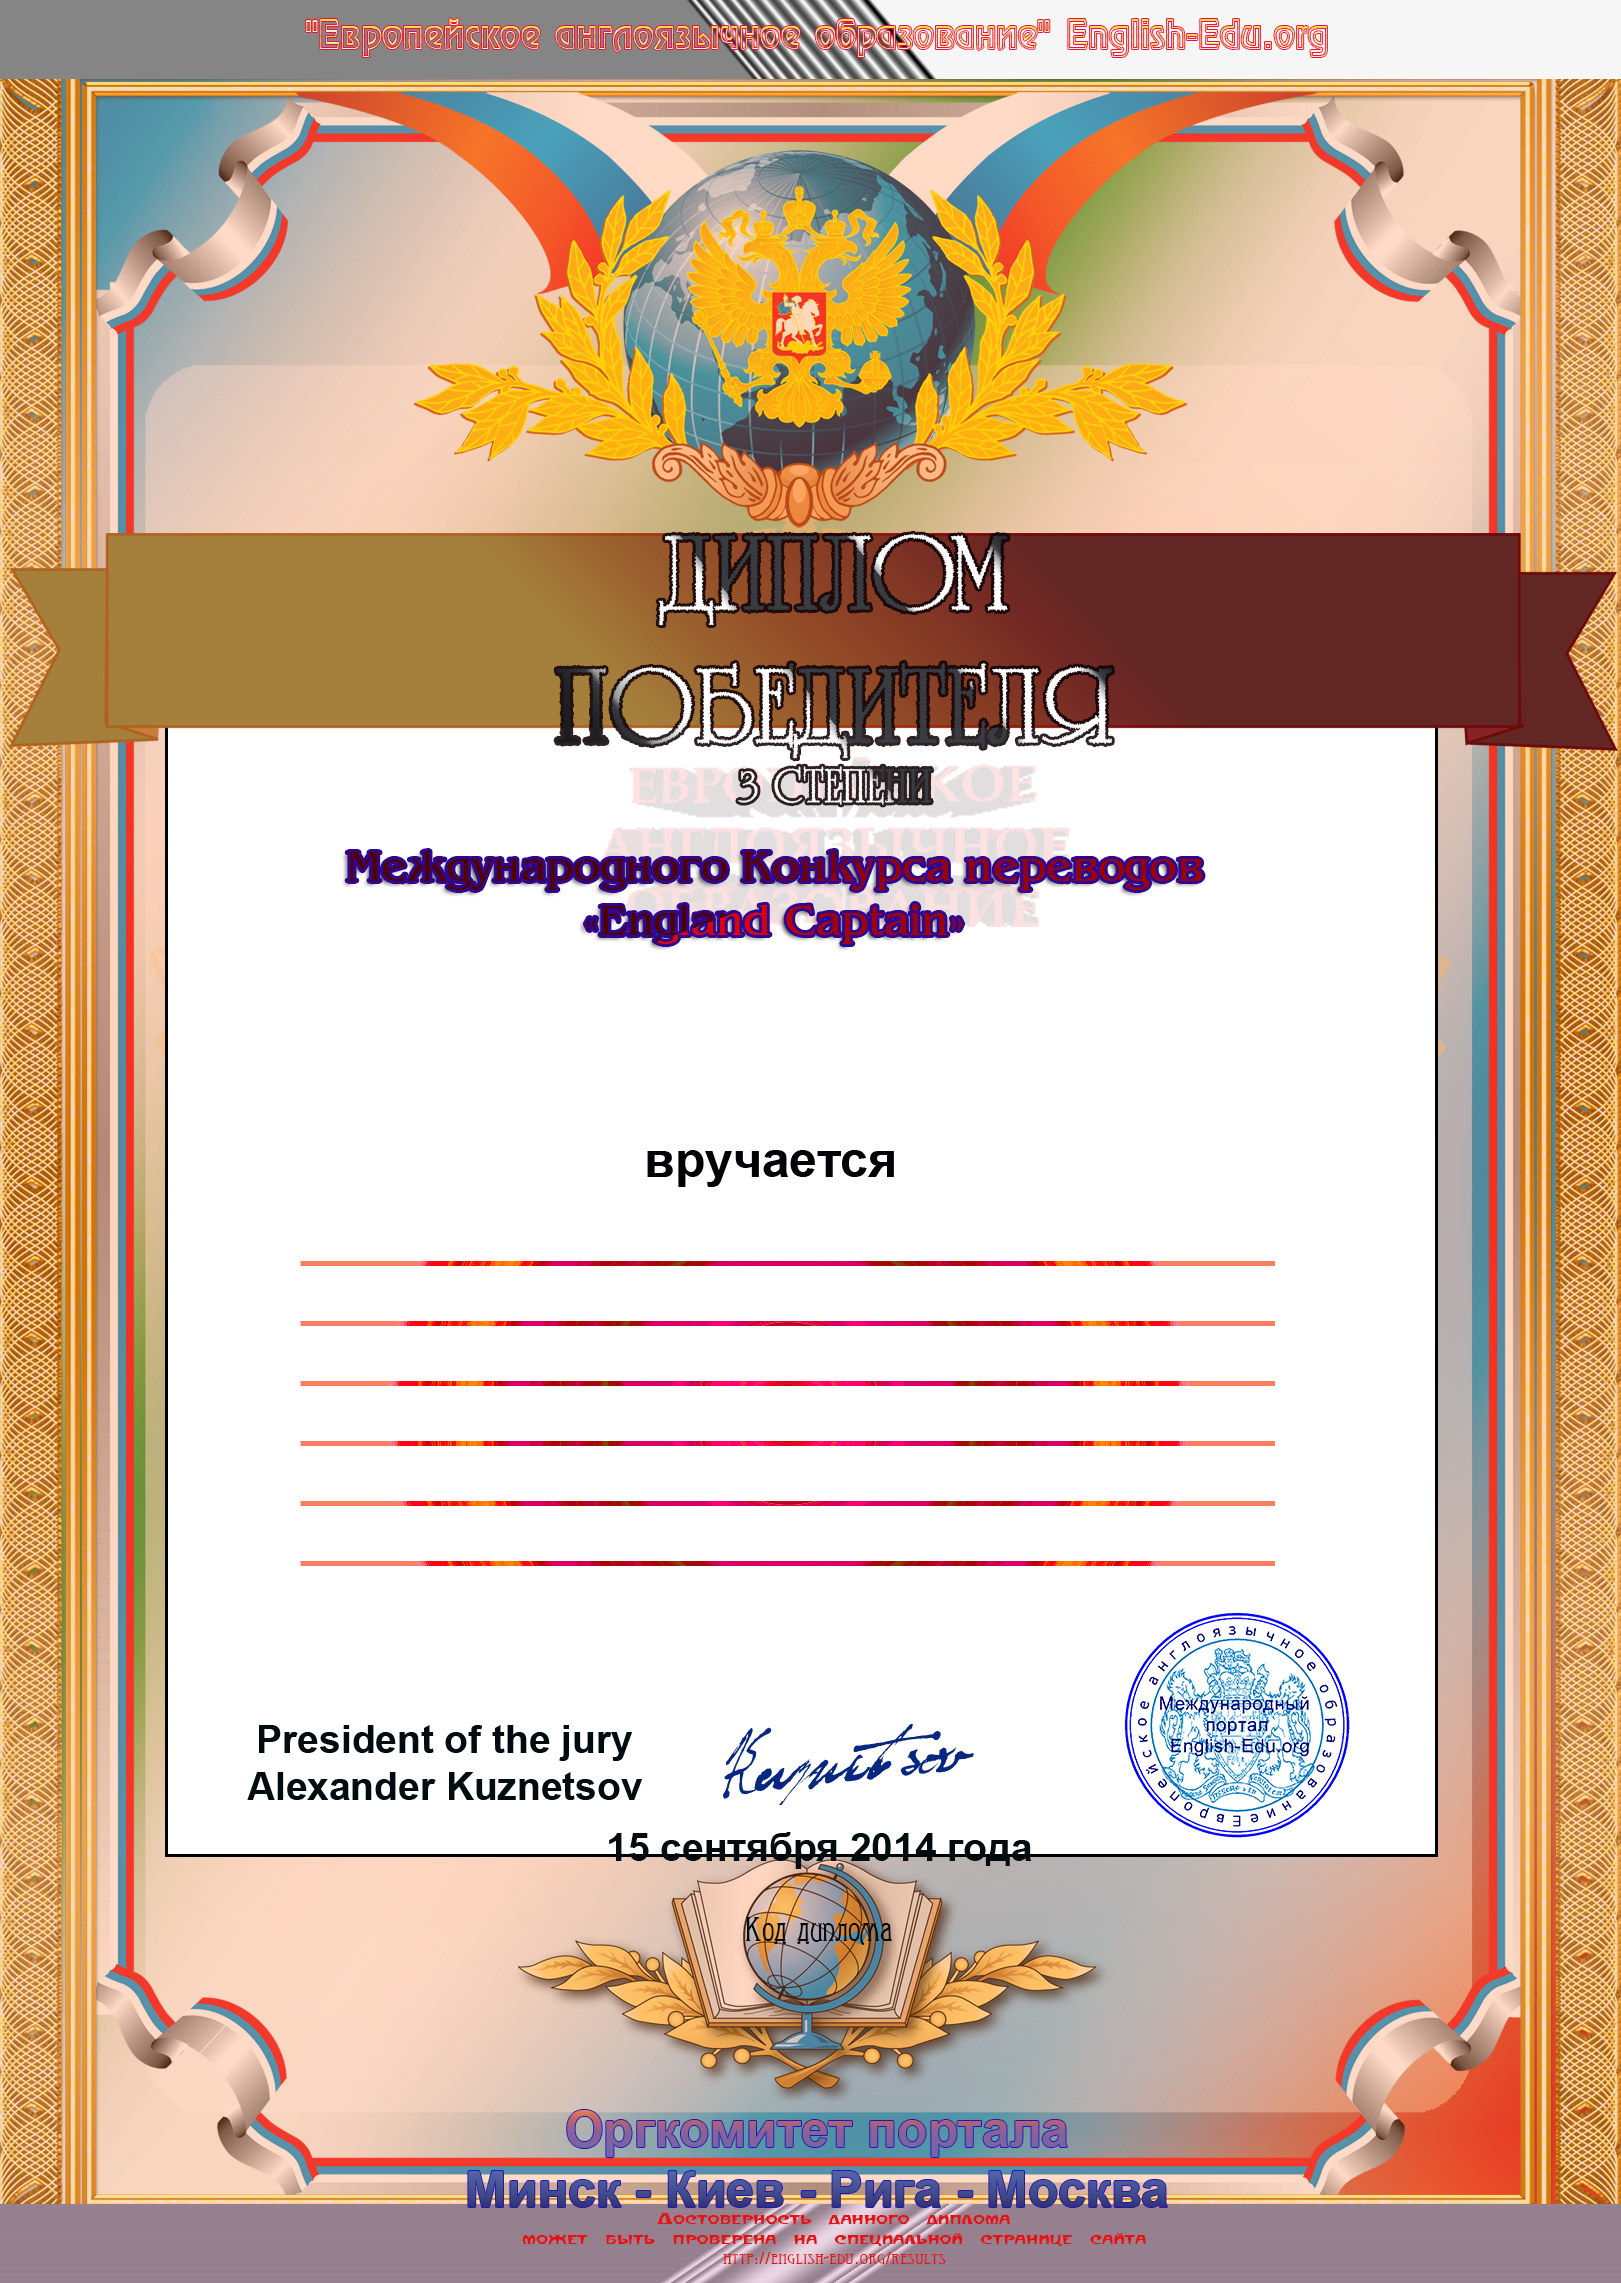 Диплом победителя 3 степени в международном конкурсе переводов